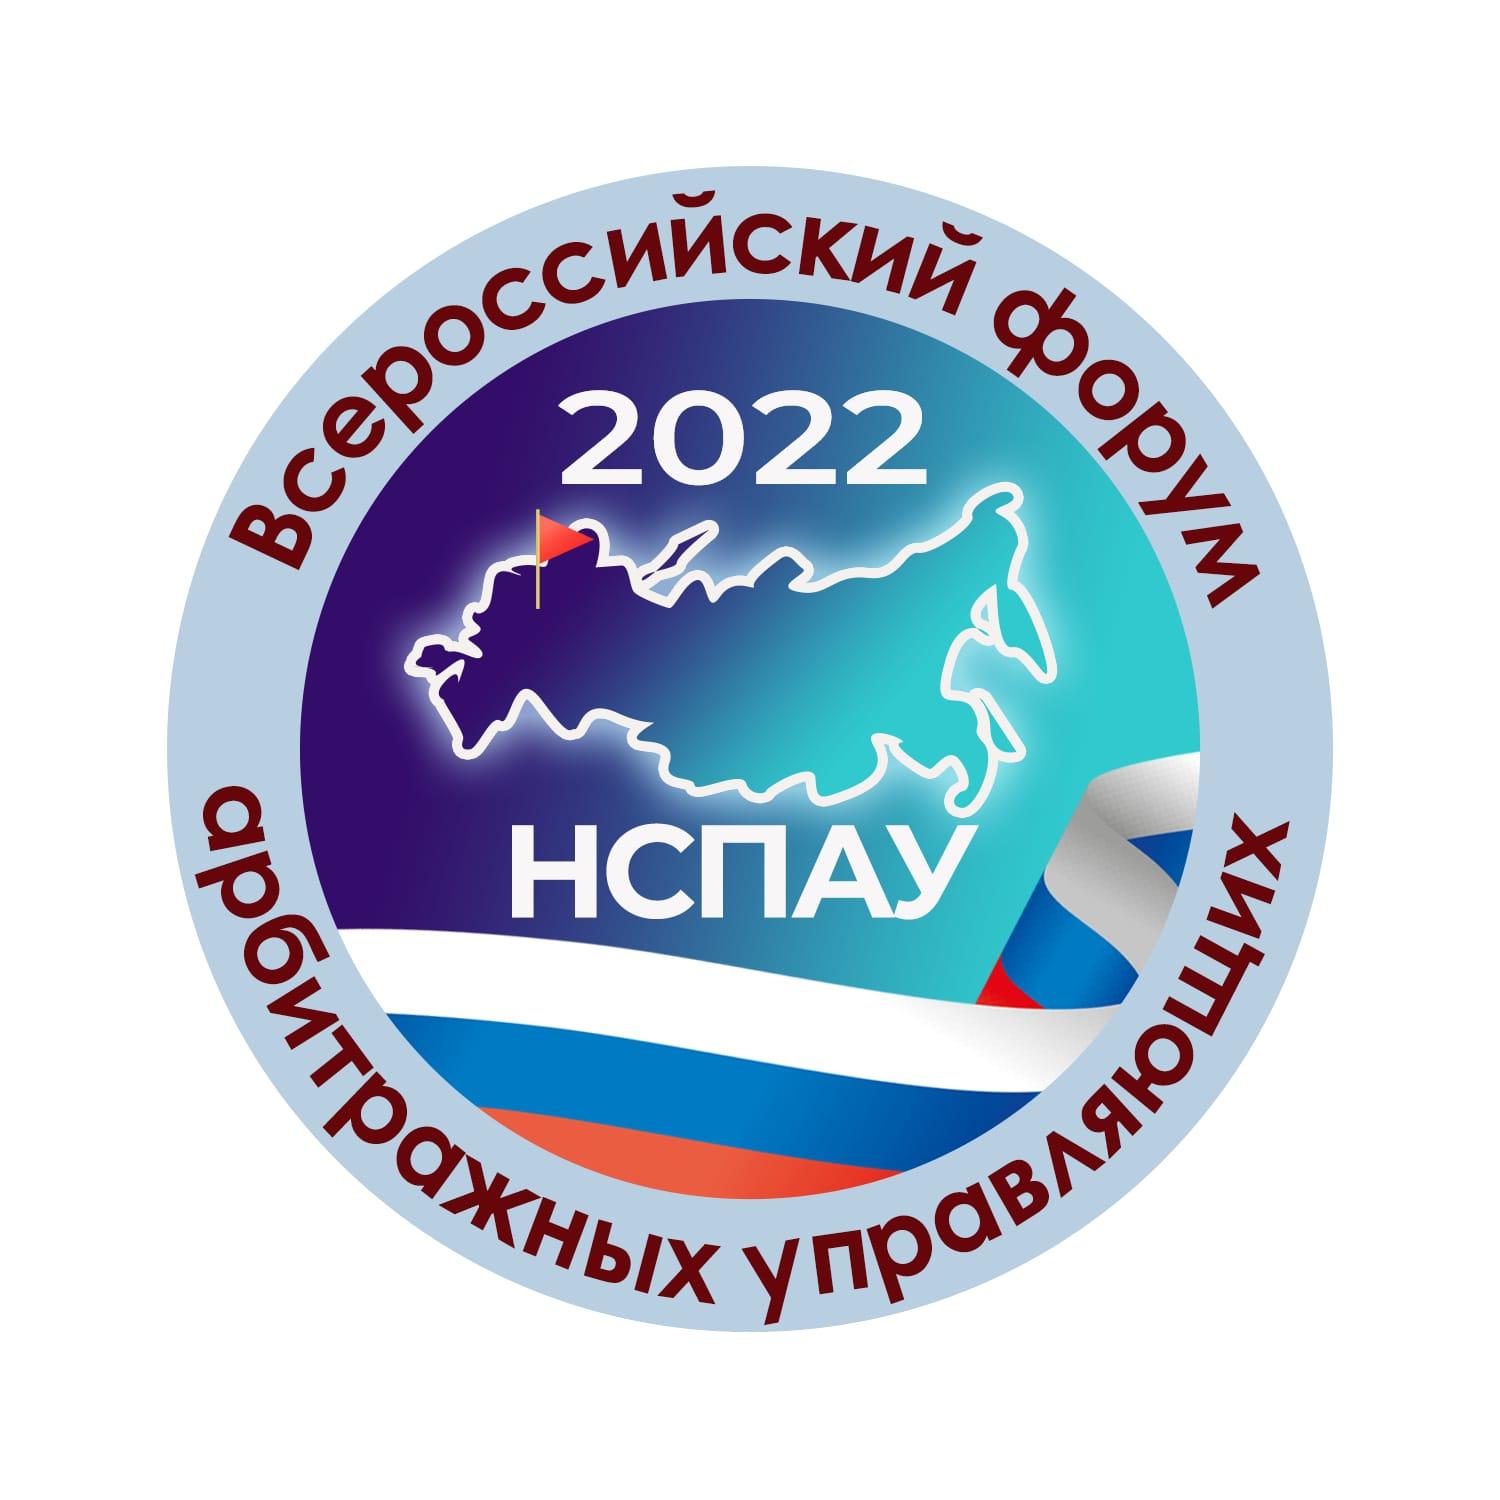 Программа Всероссийского форума арбитражных управляющих